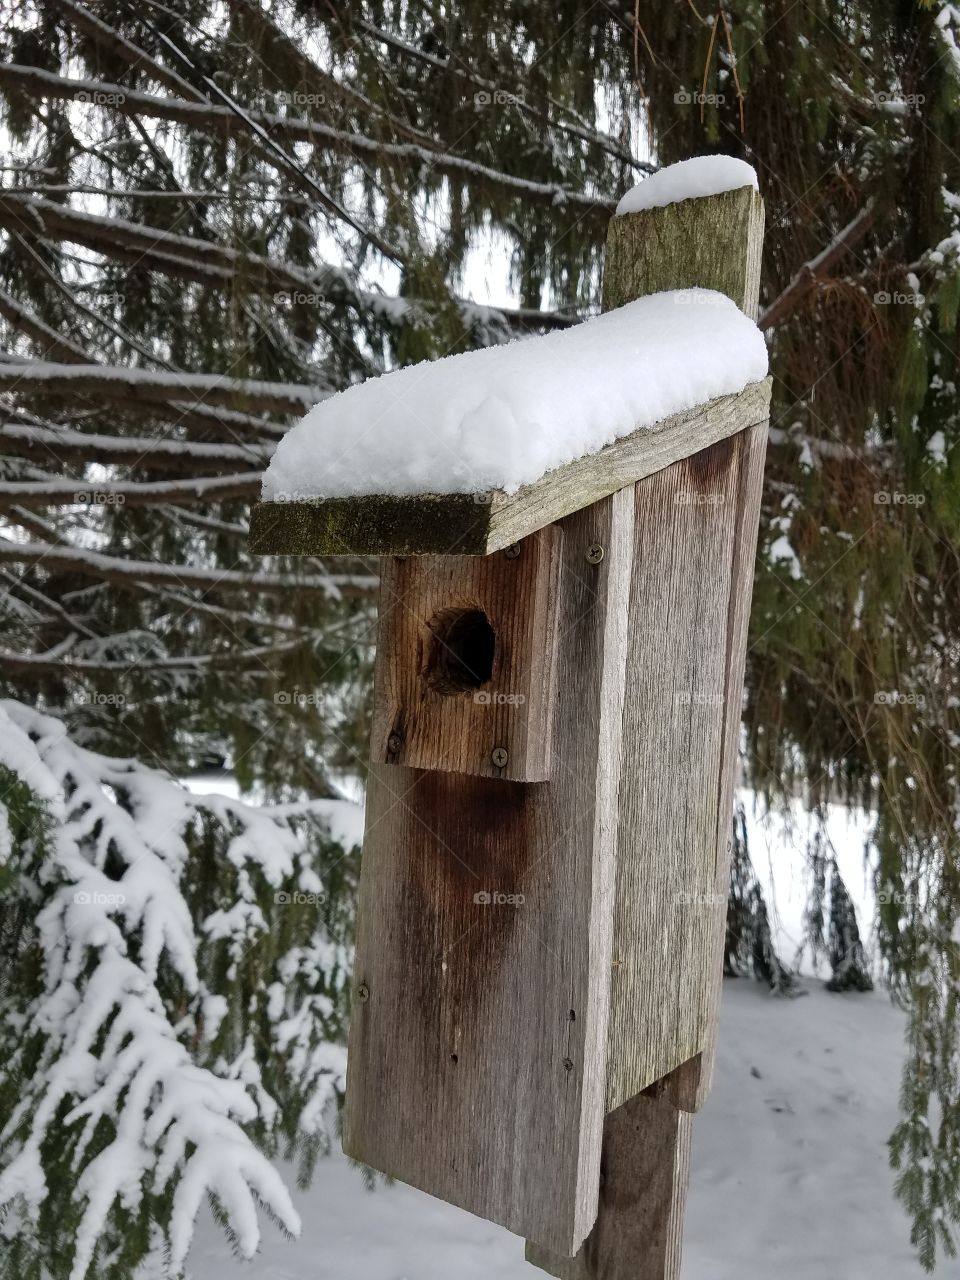 Frozen bird house